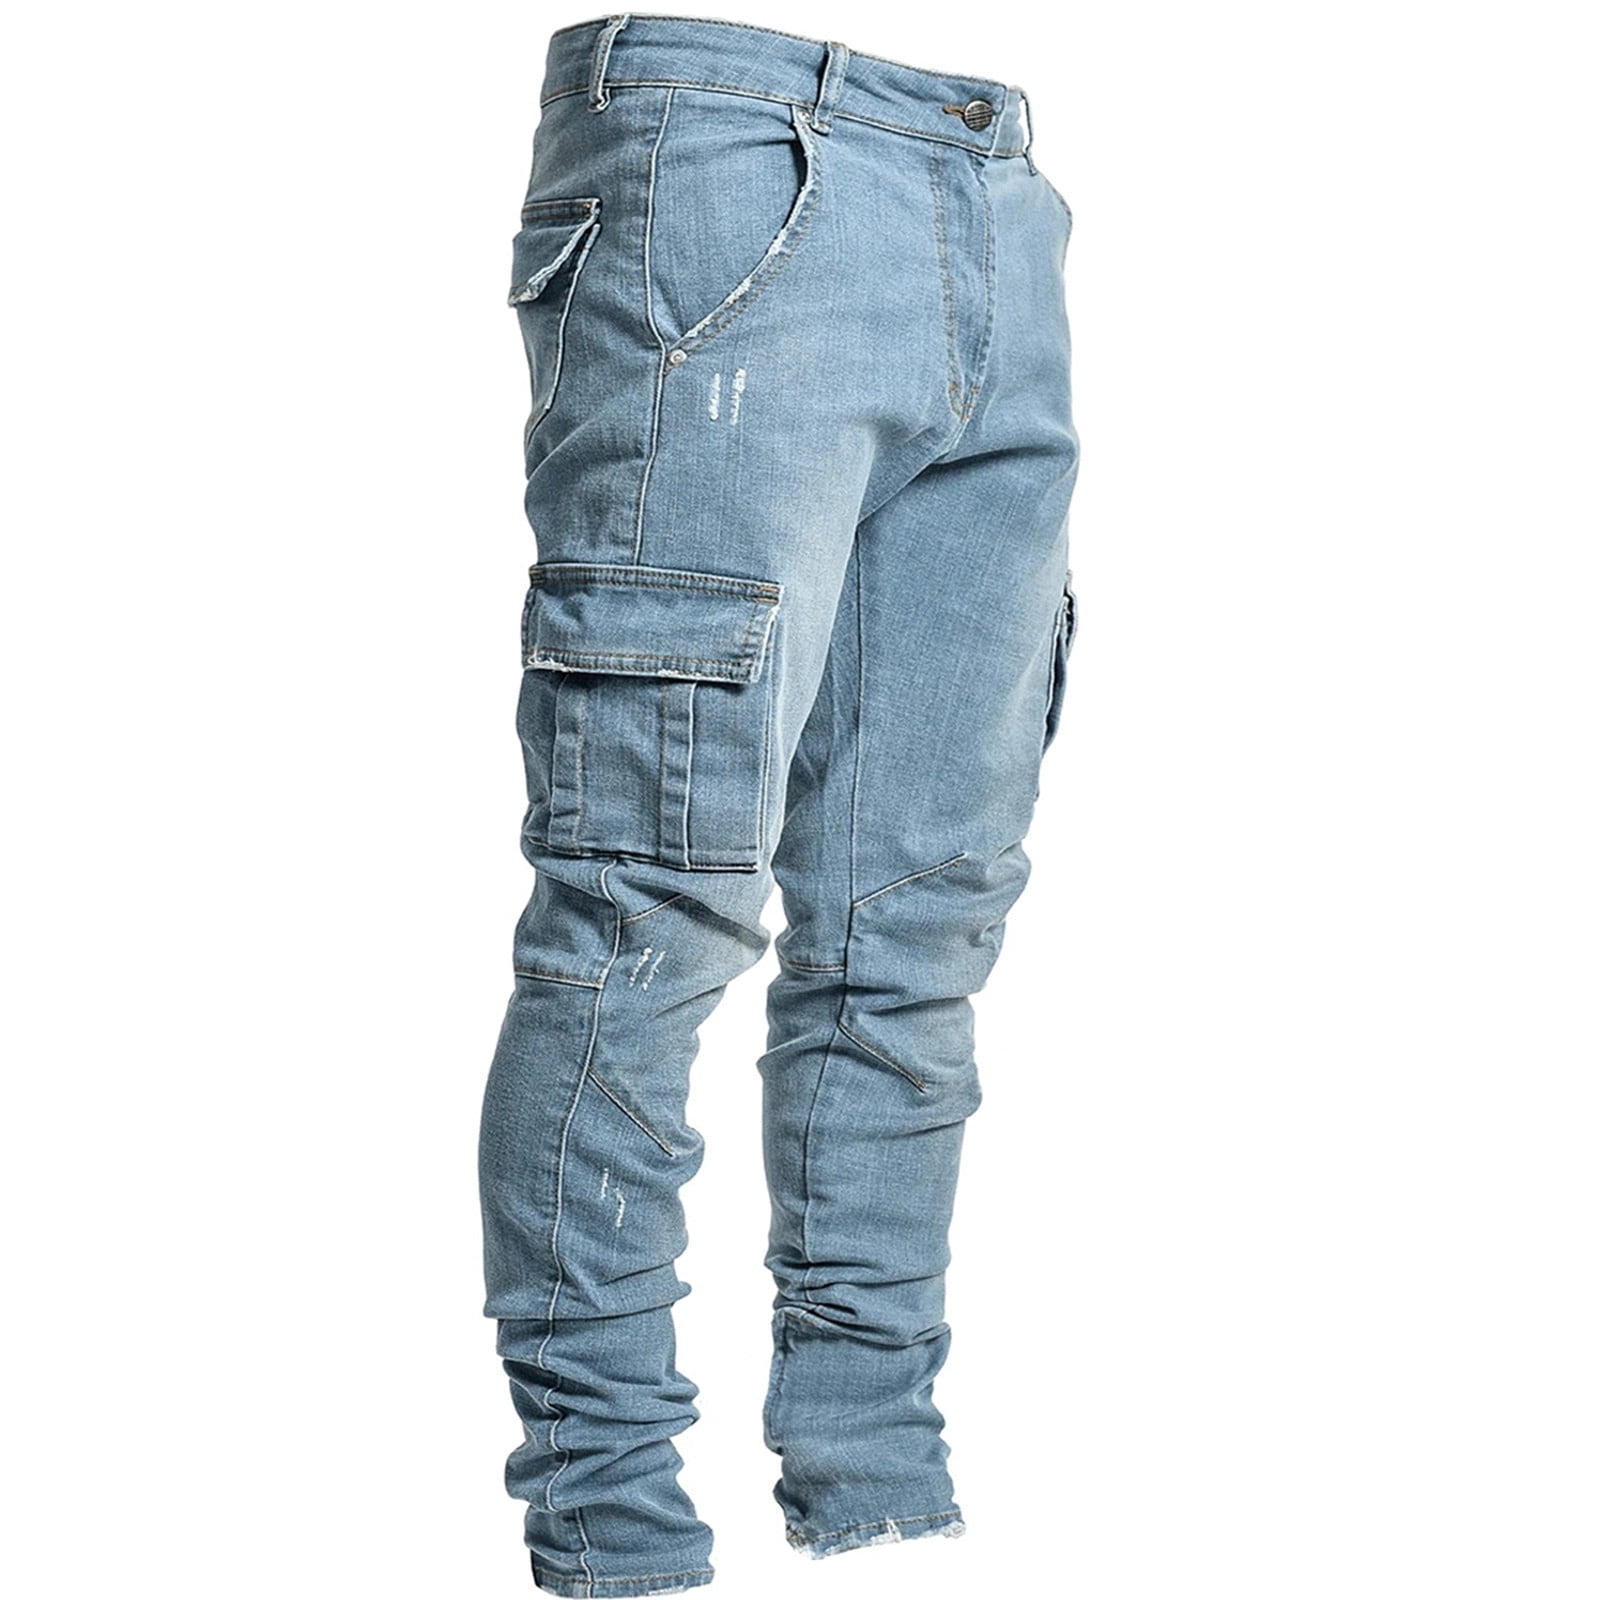 Mens Straight Slim Side Pocket Denim Jeans, Blue at Rs 1400/piece